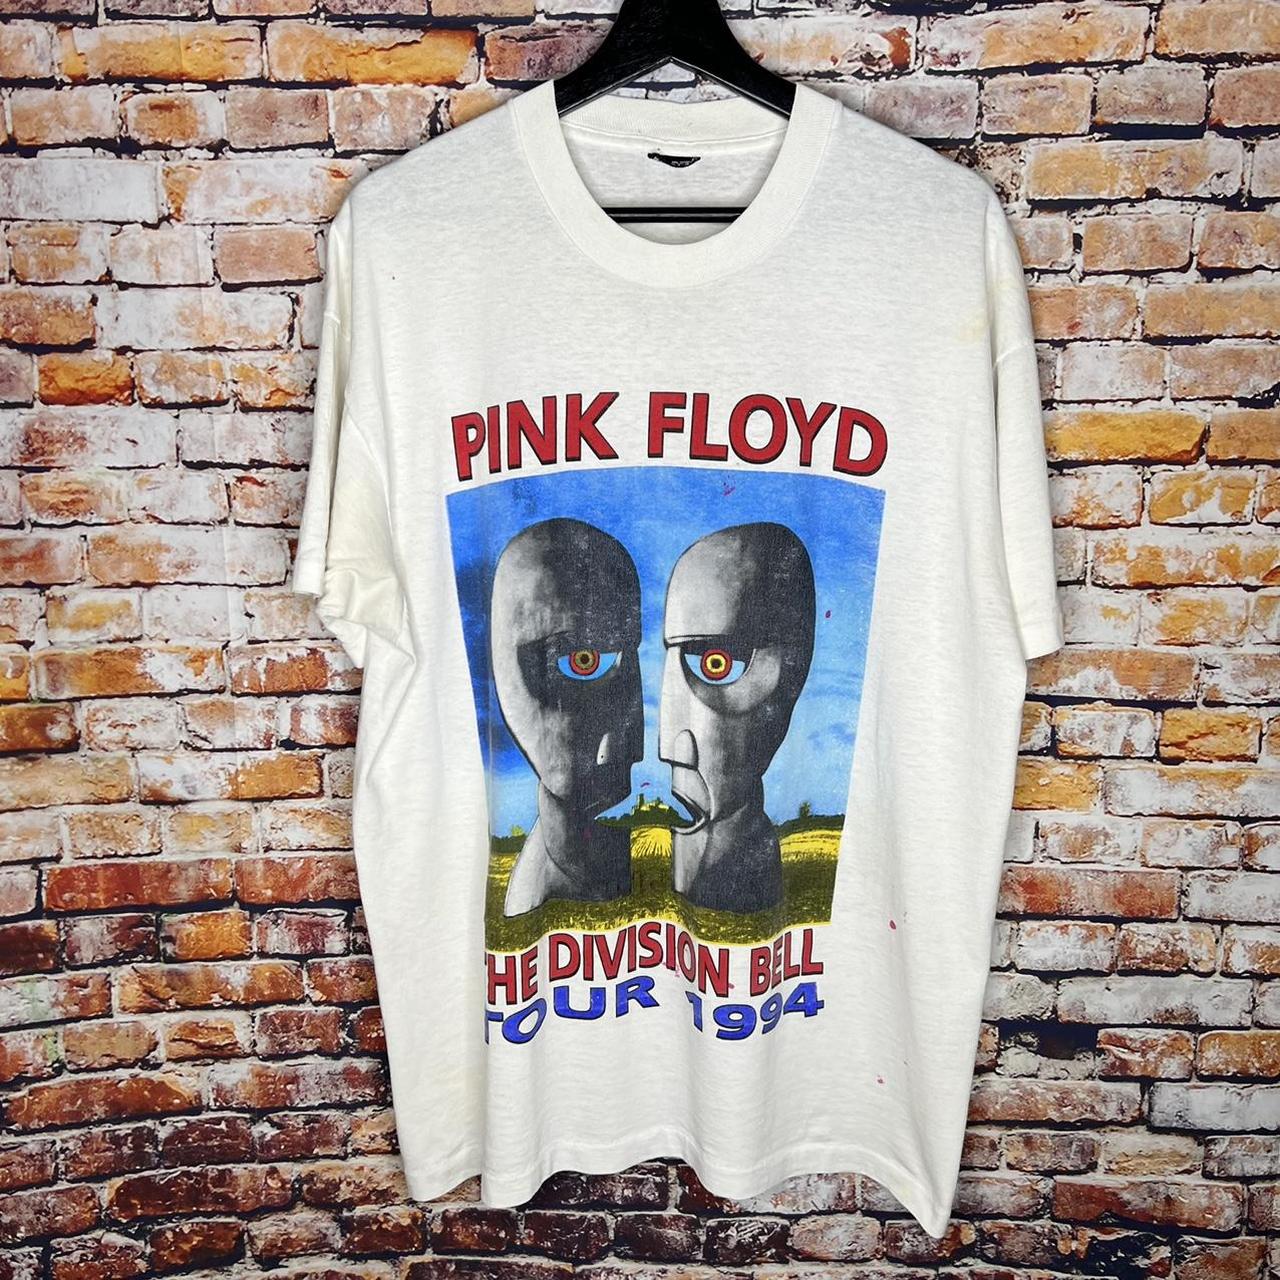 Vintage Pink Floyd Division Bell Tour 1994 T Shirt... - Depop